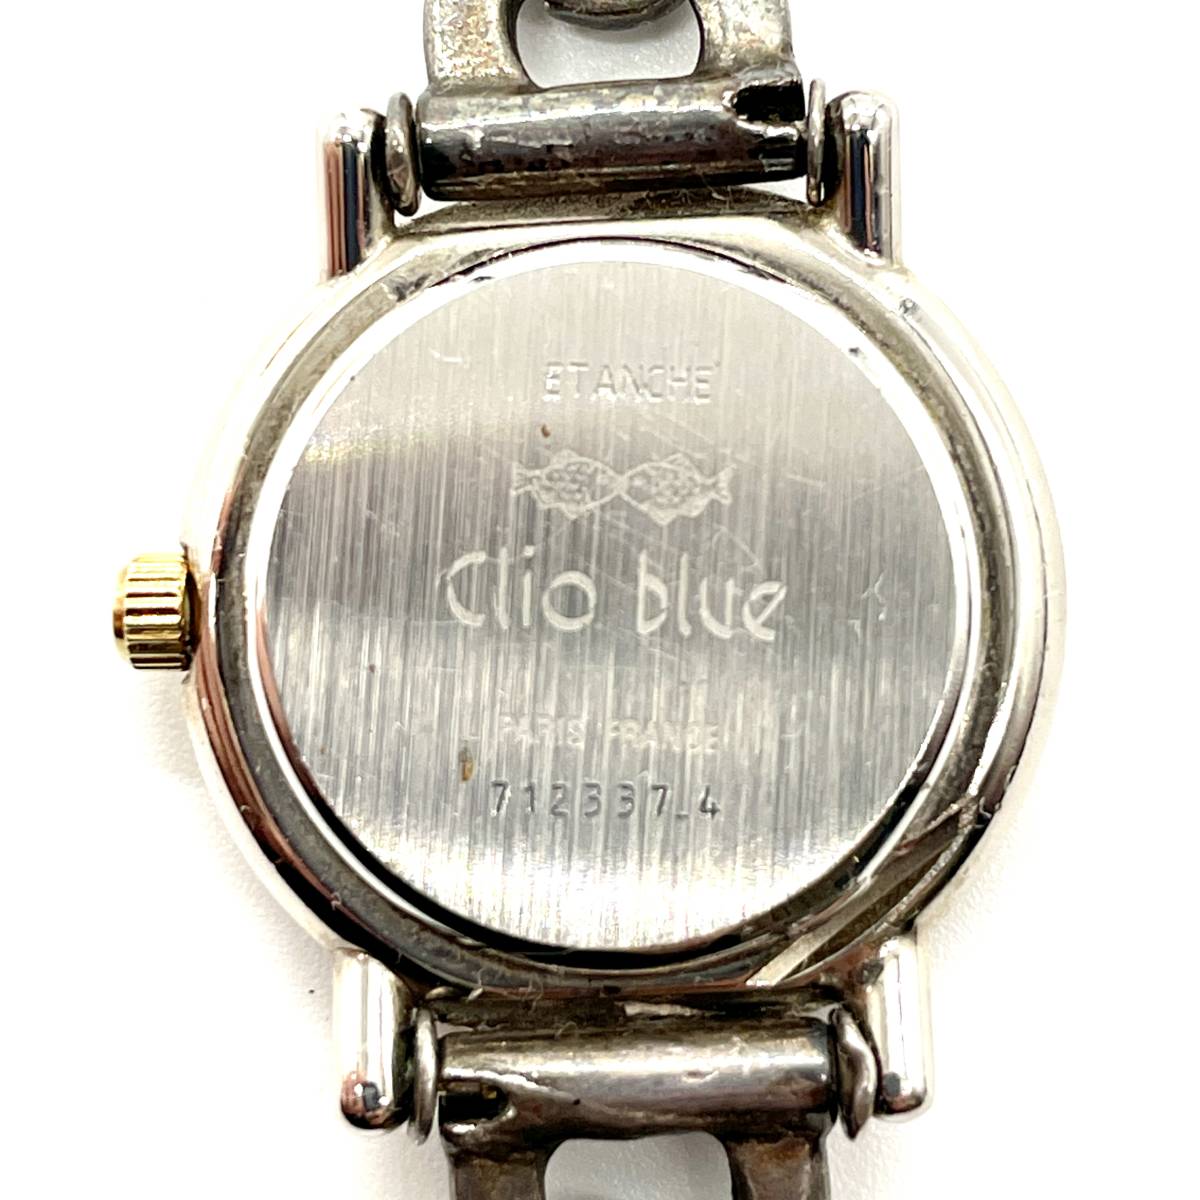 1円スタート 稼働品 Clio blue クリオブルー クォーツ 腕時計 SILVER ホールマーク シルバーチェーン ブレスレット ウォッチ ヴィンテージ_画像8